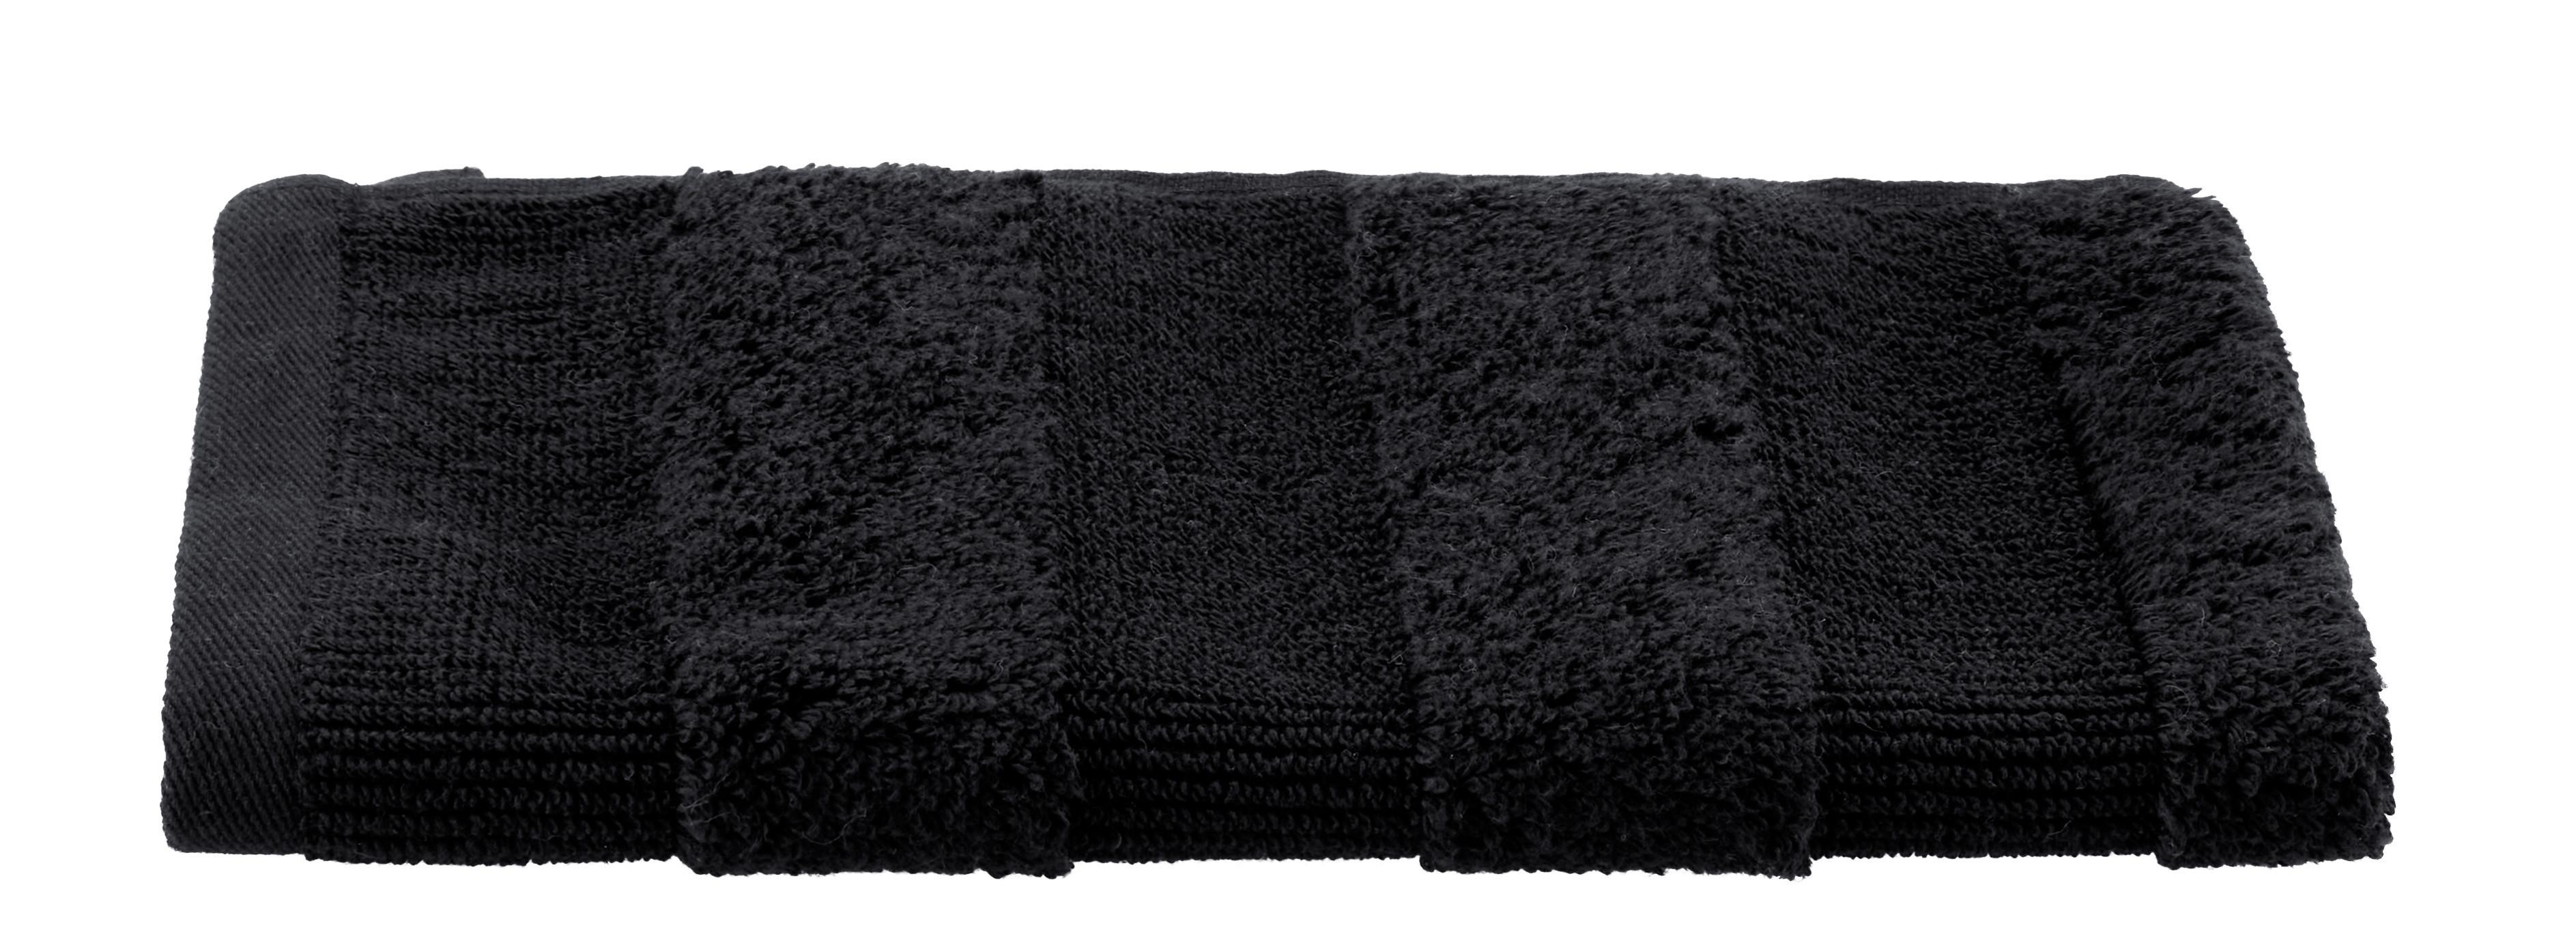 Ručník Pro Hosty Chris, 30/50cm, Černá - černá, textil (30/50cm) - Premium Living